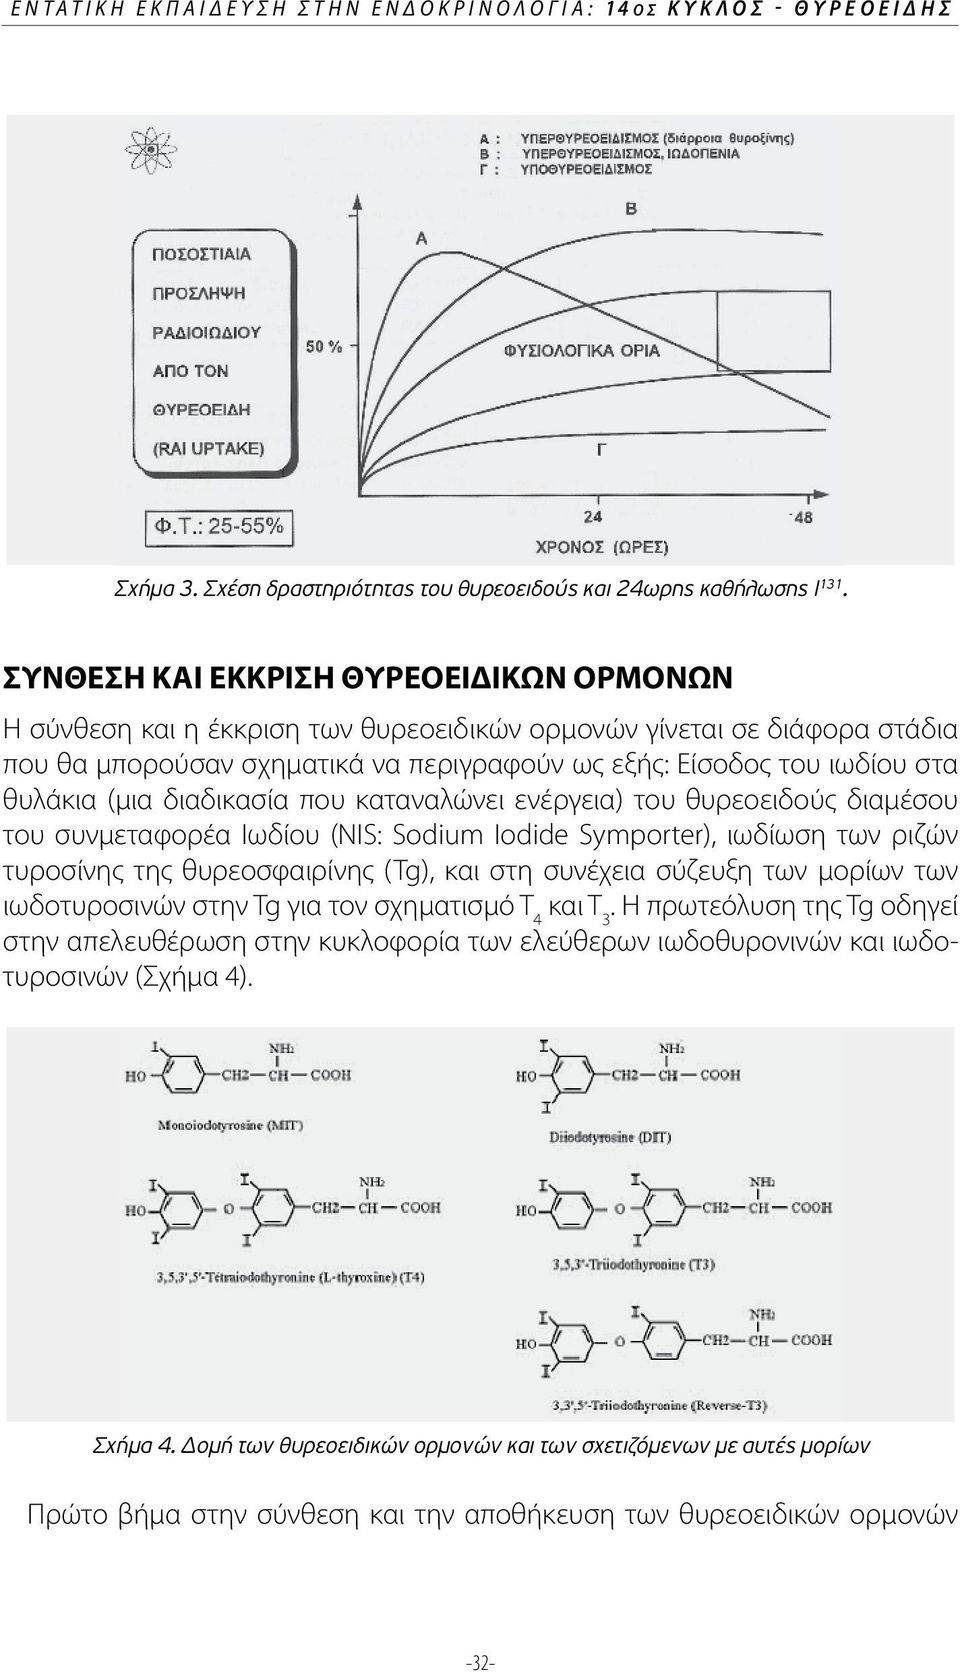 (μια διαδικασία που καταναλώνει ενέργεια) του θυρεοειδούς διαμέσου του συνμεταφορέα Ιωδίου (NIS: Sodium Iodide Symporter), ιωδίωση των ριζών τυροσίνης της θυρεοσφαιρίνης (Tg), και στη συνέχεια